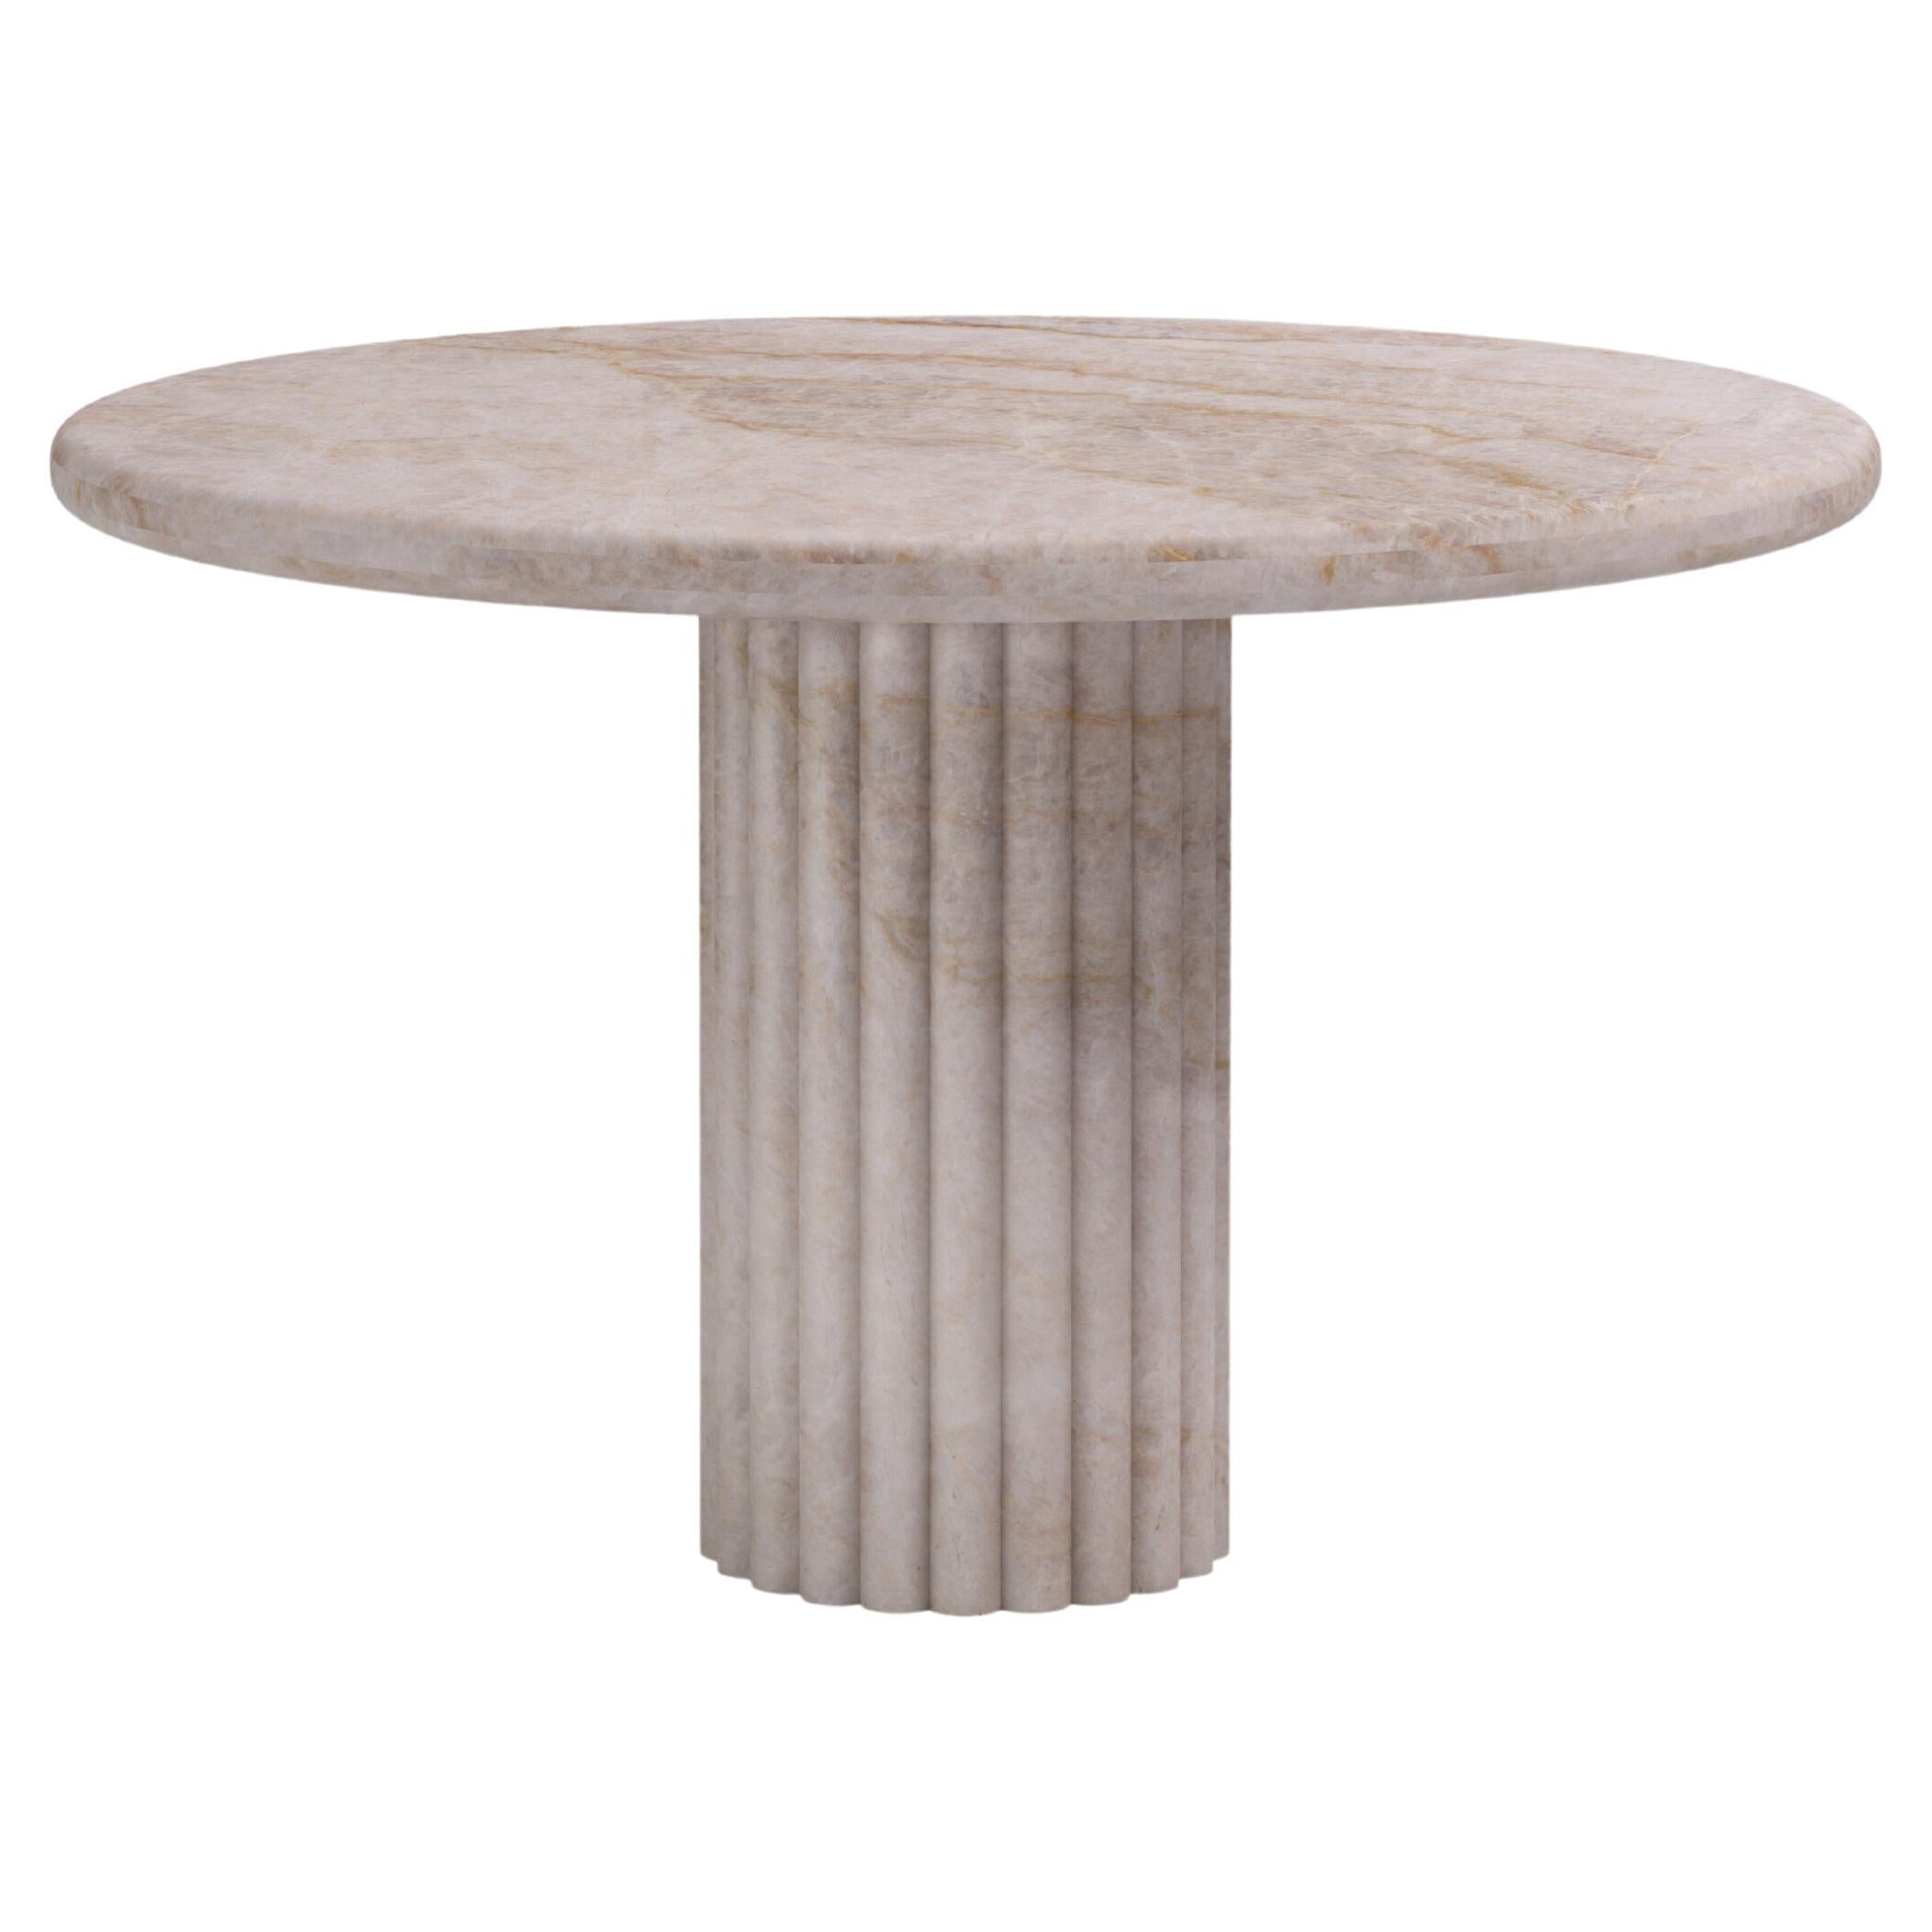 FORM(LA) Fluta Round Dining Table 60”L x 60”W x 30”H Taj Mahal Quartzite For Sale